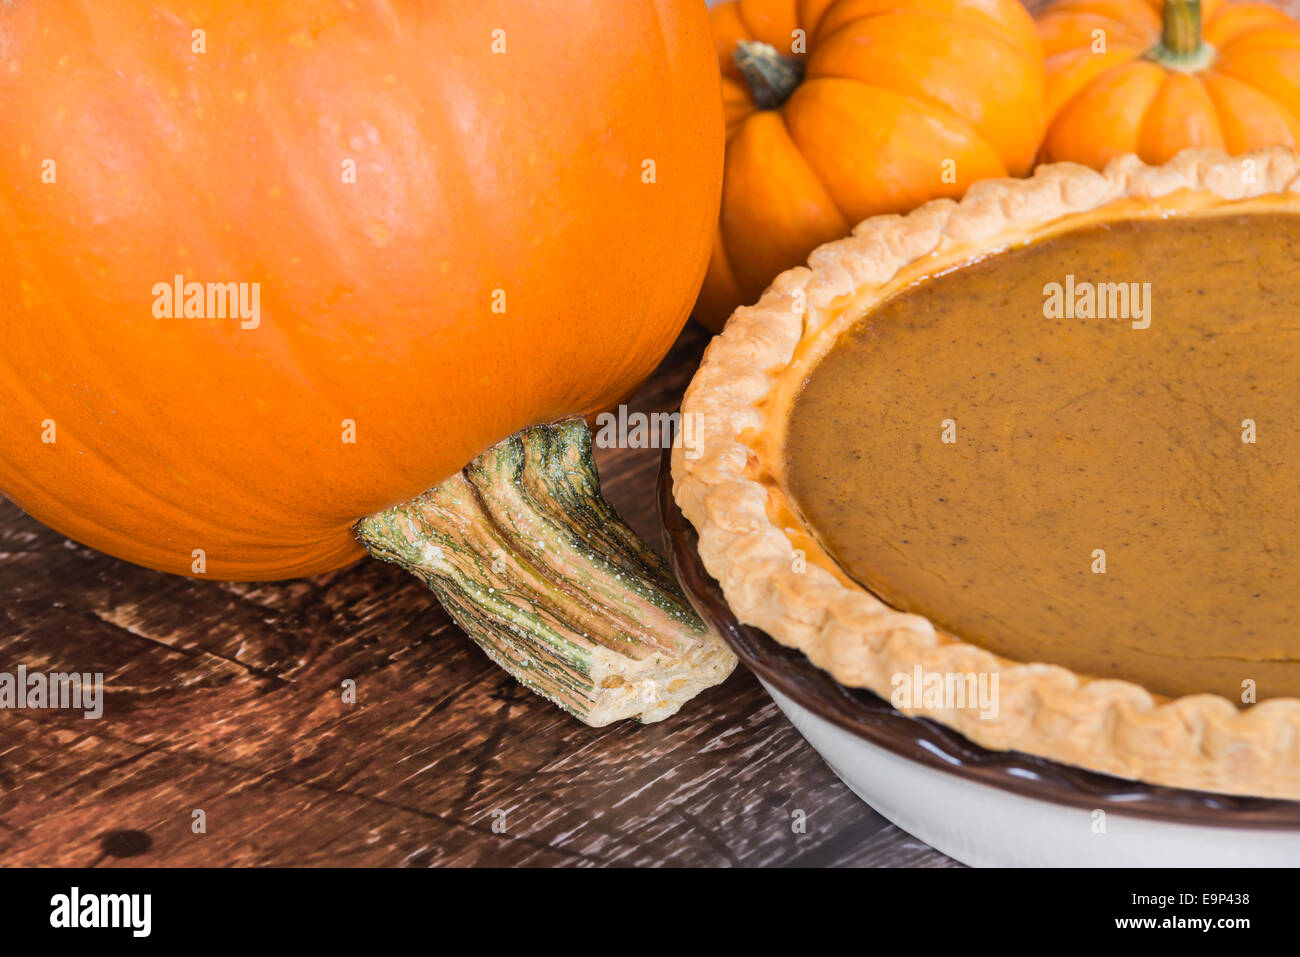 Closeup of pie pumpkin and a homemade pumpkin pie Stock Photo